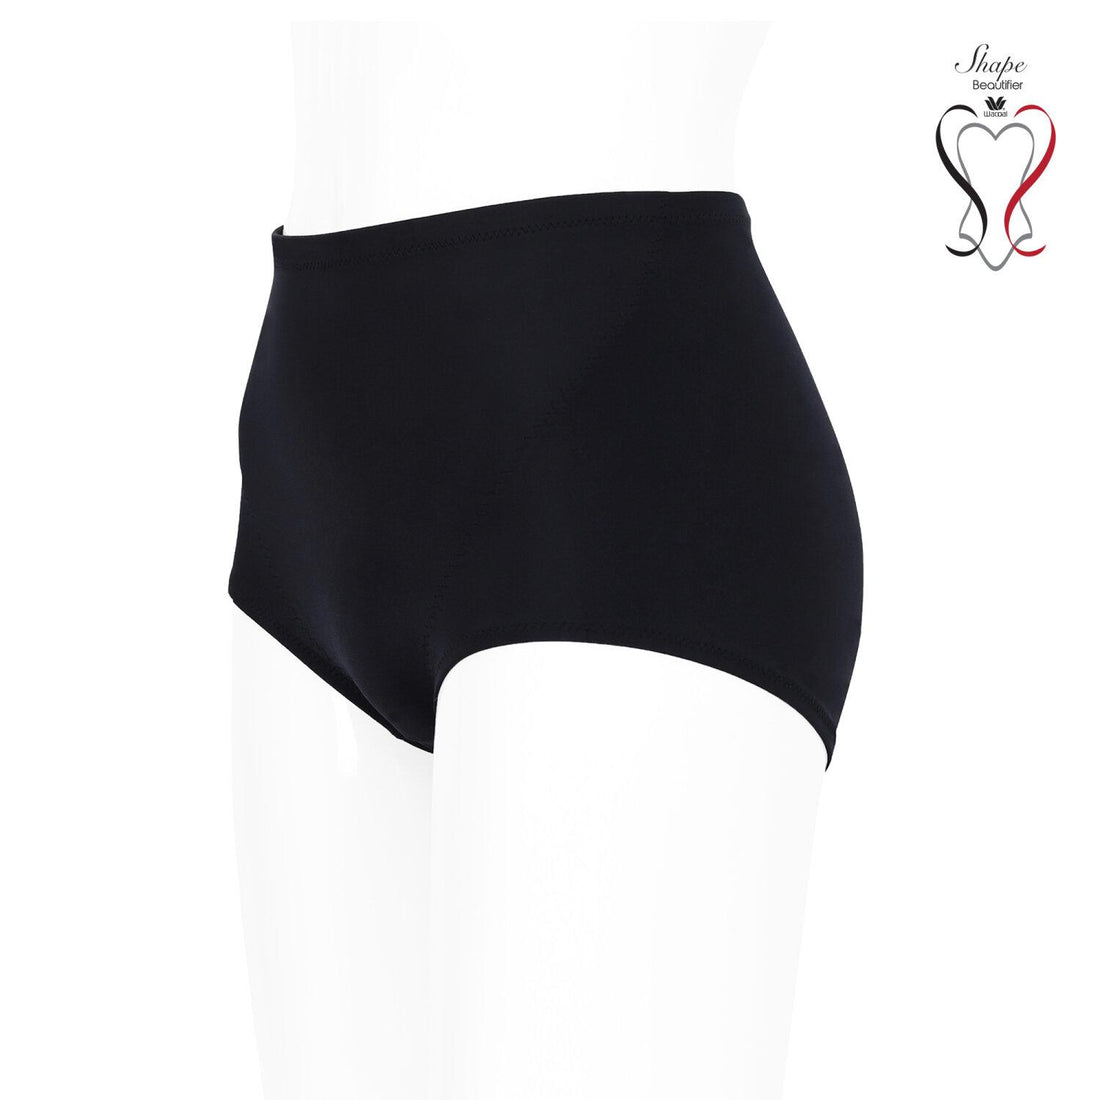 Wacoal Shapewear Hip กางเกงกระชับสัดส่วน ขาสั้นเอวปกติ รุ่น WY1151 สีดำ (BL)